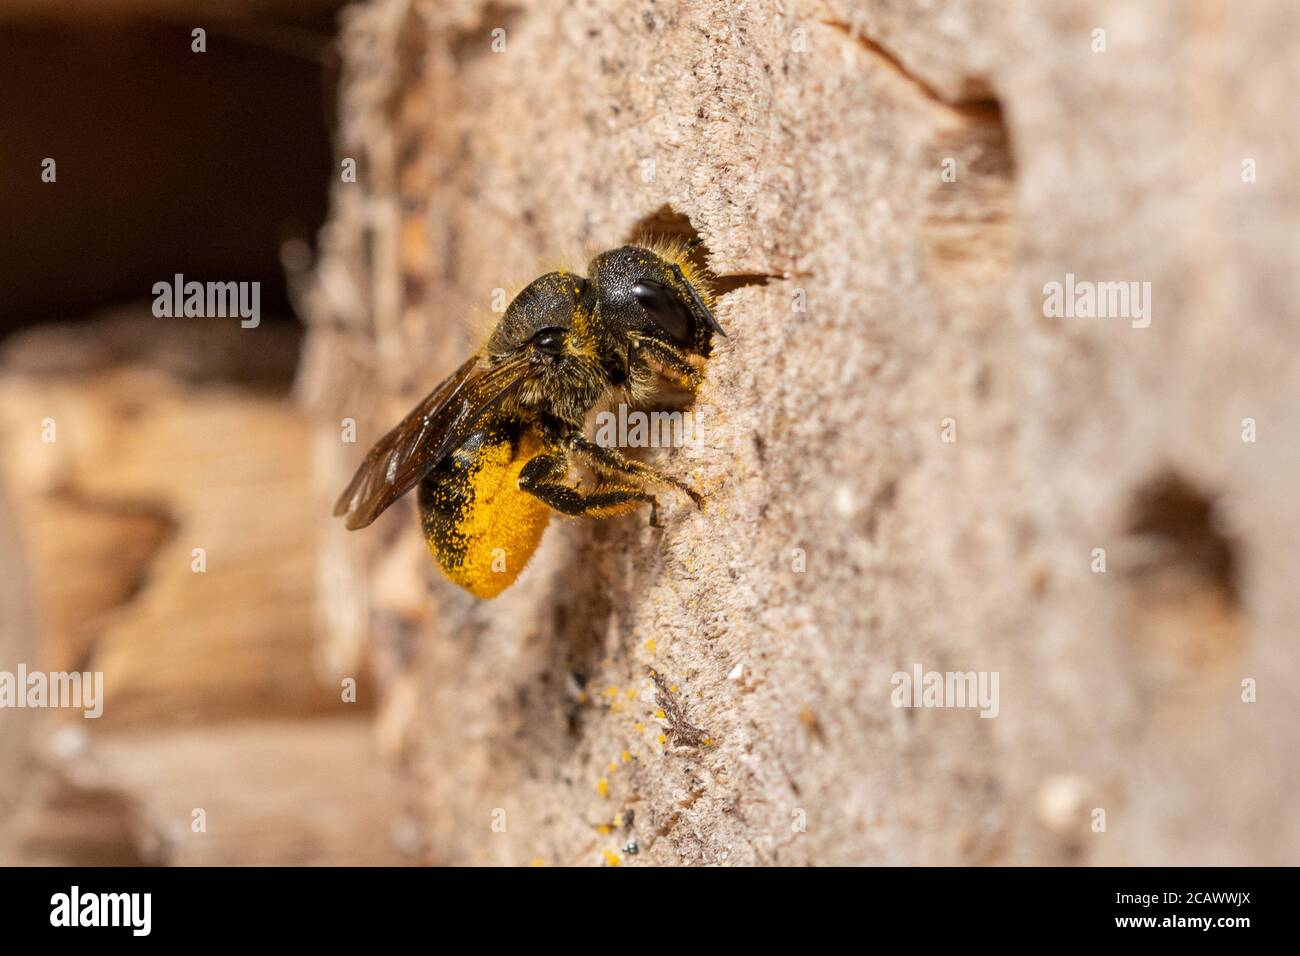 Femme maçon à ventilation orange (Osmia leaiana) approvisionnant son nid dans un hôtel d'abeilles avec pollen, Royaume-Uni, août Banque D'Images